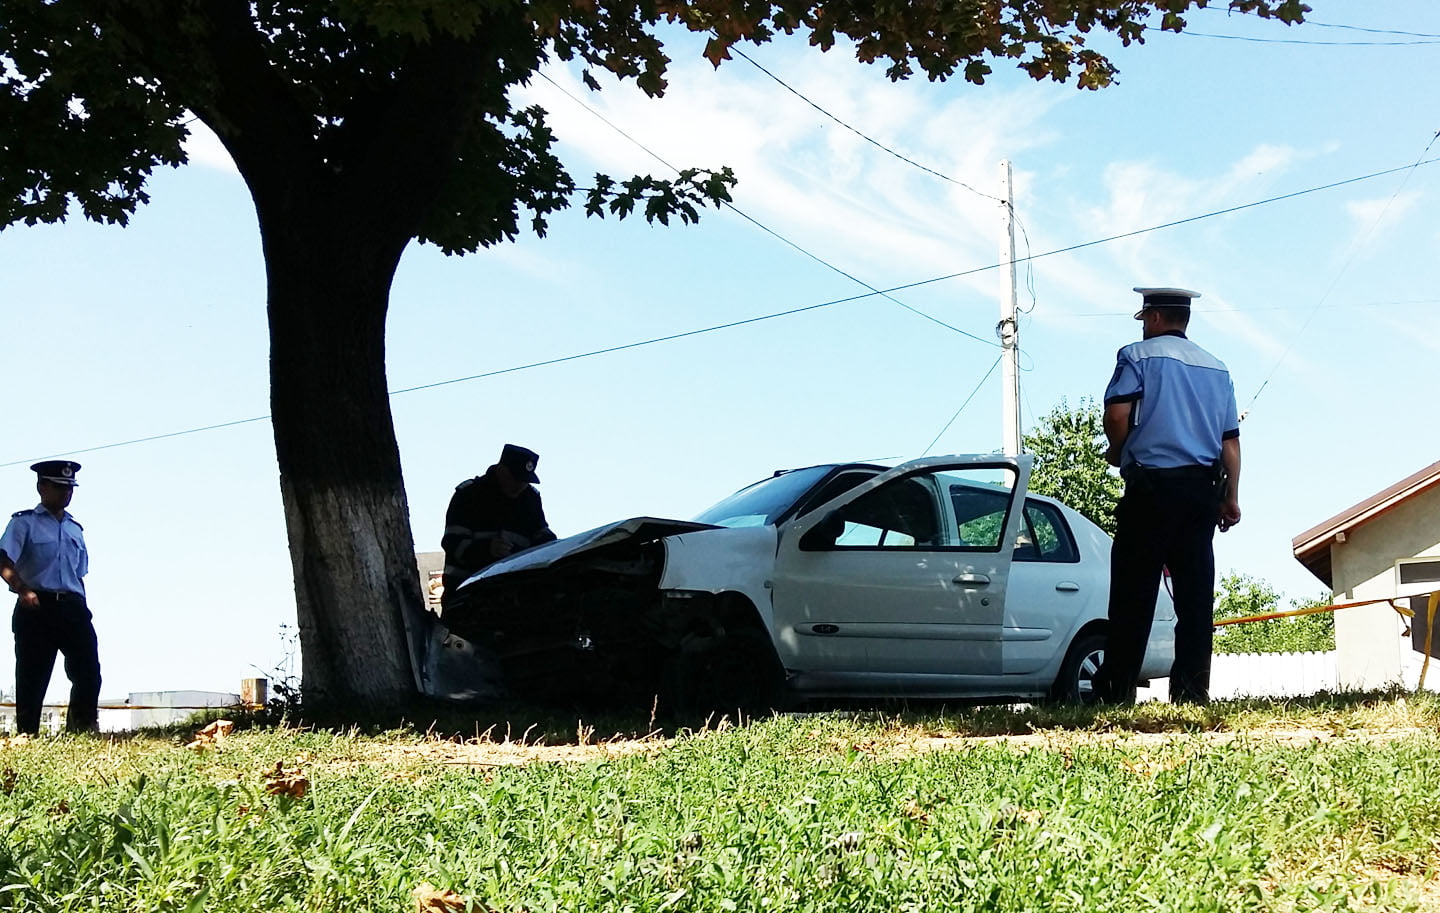 [FOTO] Accident cu trei victime, după ce un şofer băut a intrat într-un copac, pe strada Bogdan Dragoş